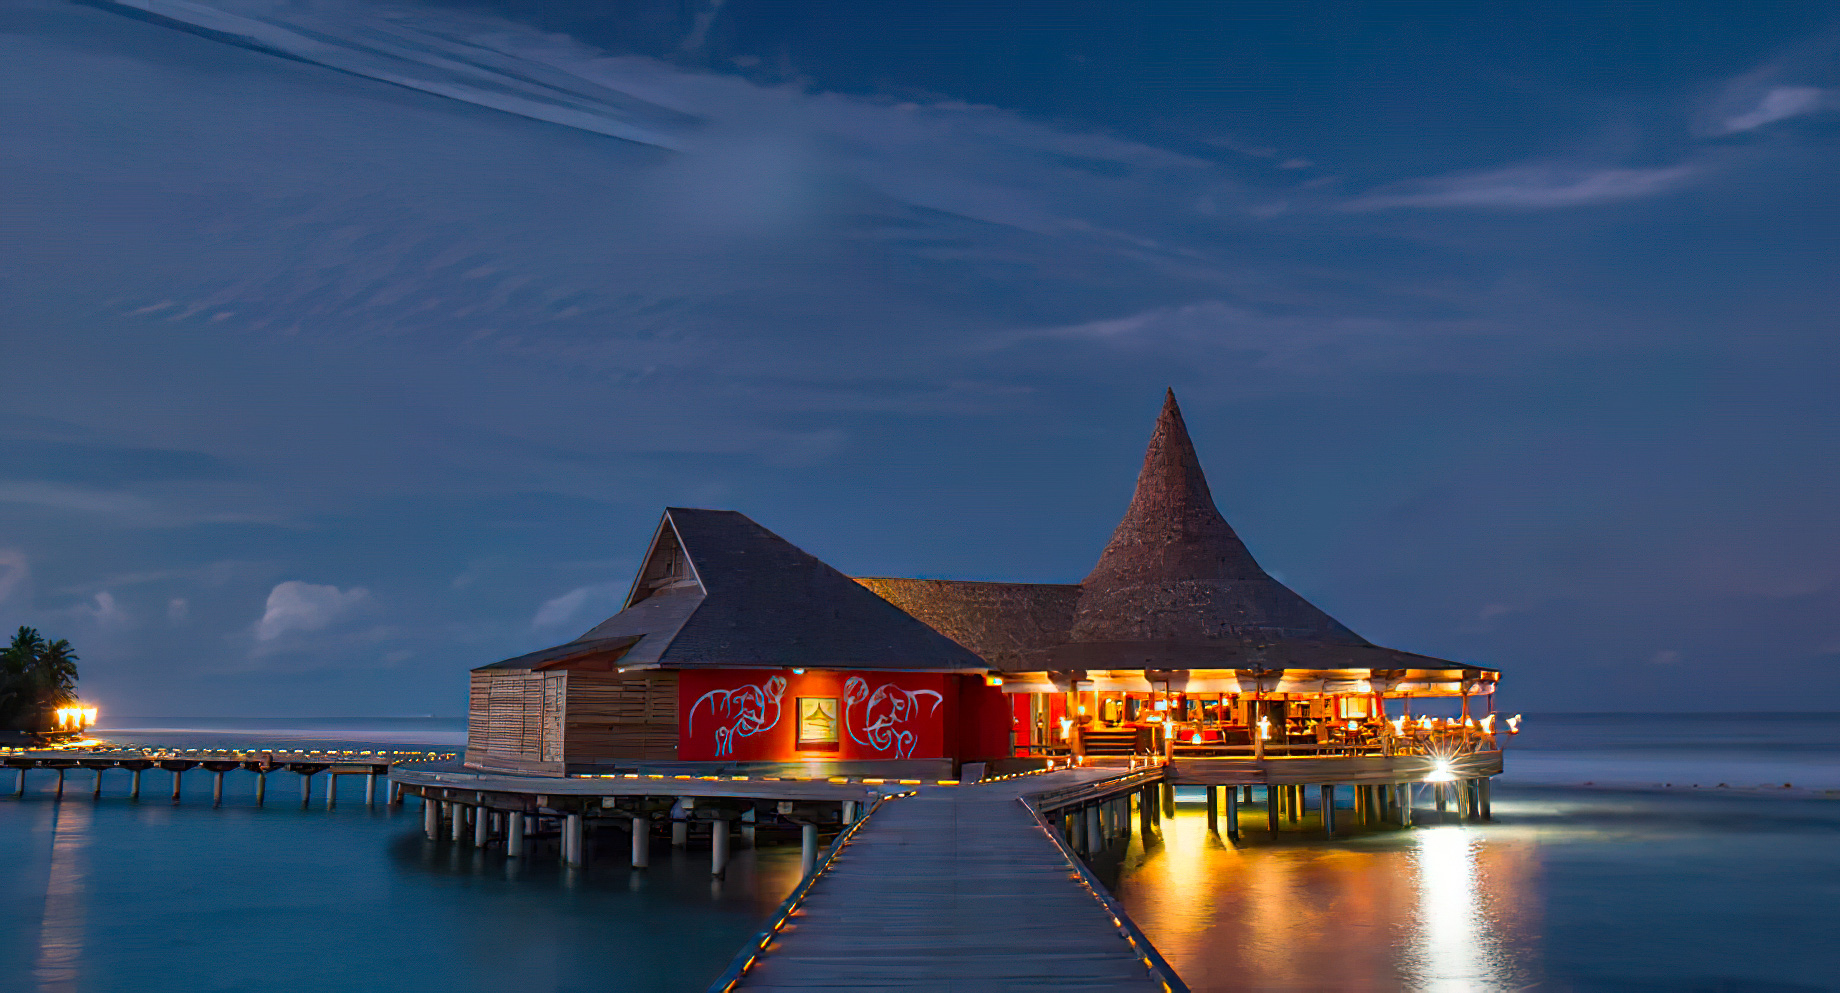 Anantara Thigu Maldives Resort – South Male Atoll, Maldives – Baan Huraa Restaurant Ocean View Night